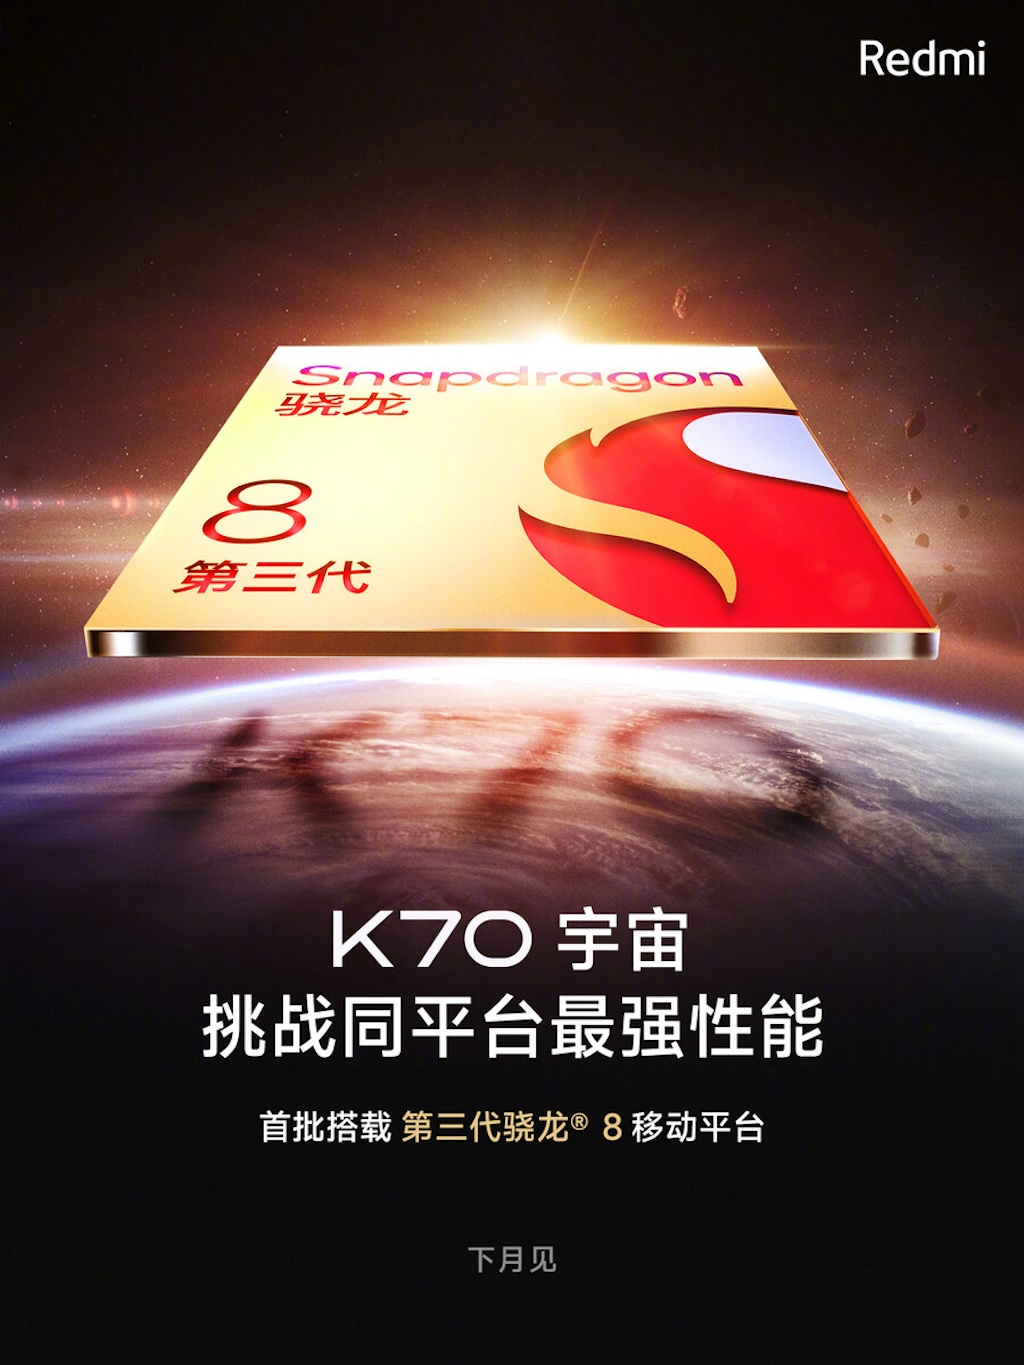 Sau Xiaomi 14 Series, dòng điện thoại cấu hình cao giá "mềm" Redmi K70 cũng sắp sửa được ra mắt